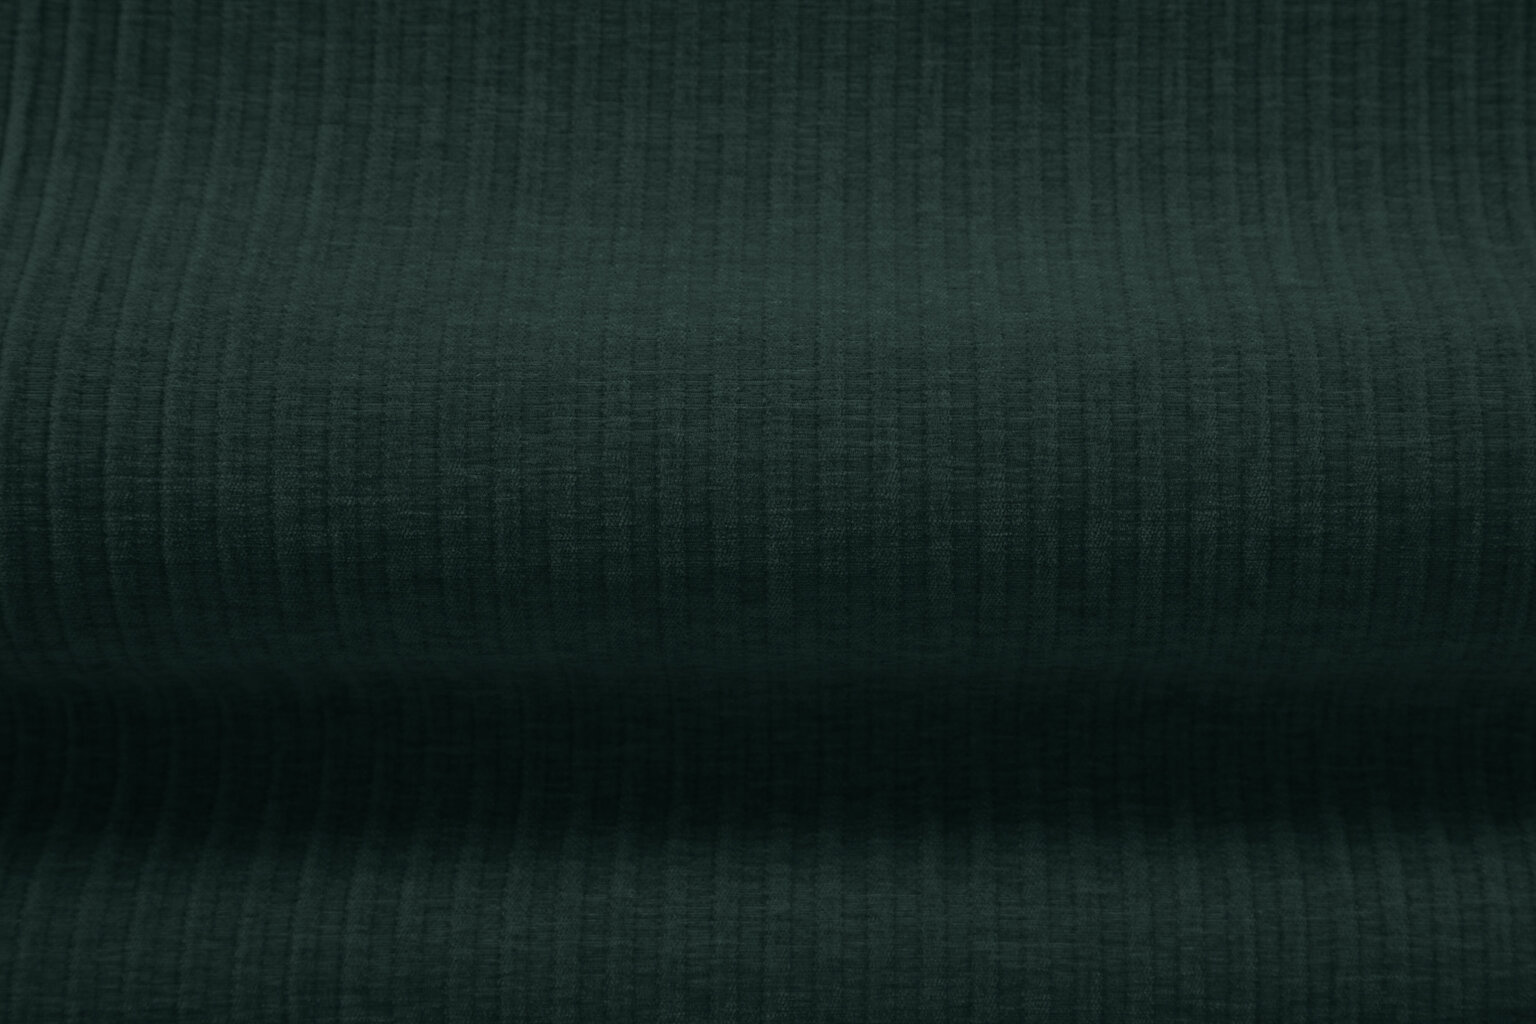 Kairinė sofa Cosmopolitan Design Arendal, žalia kaina ir informacija | Sofos | pigu.lt